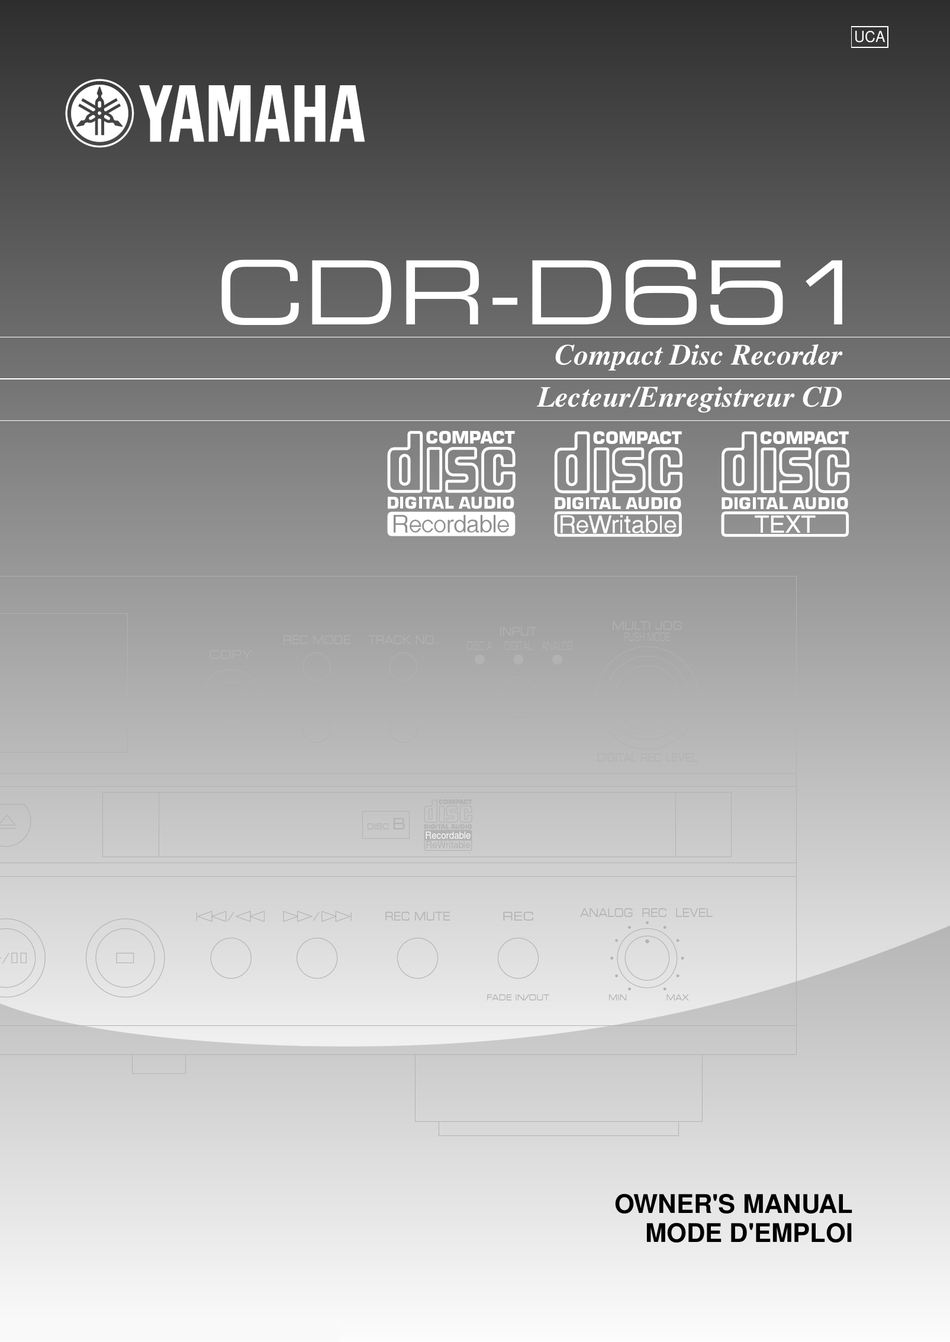 Yamaha Cdr-d651 Dual-Drawer 